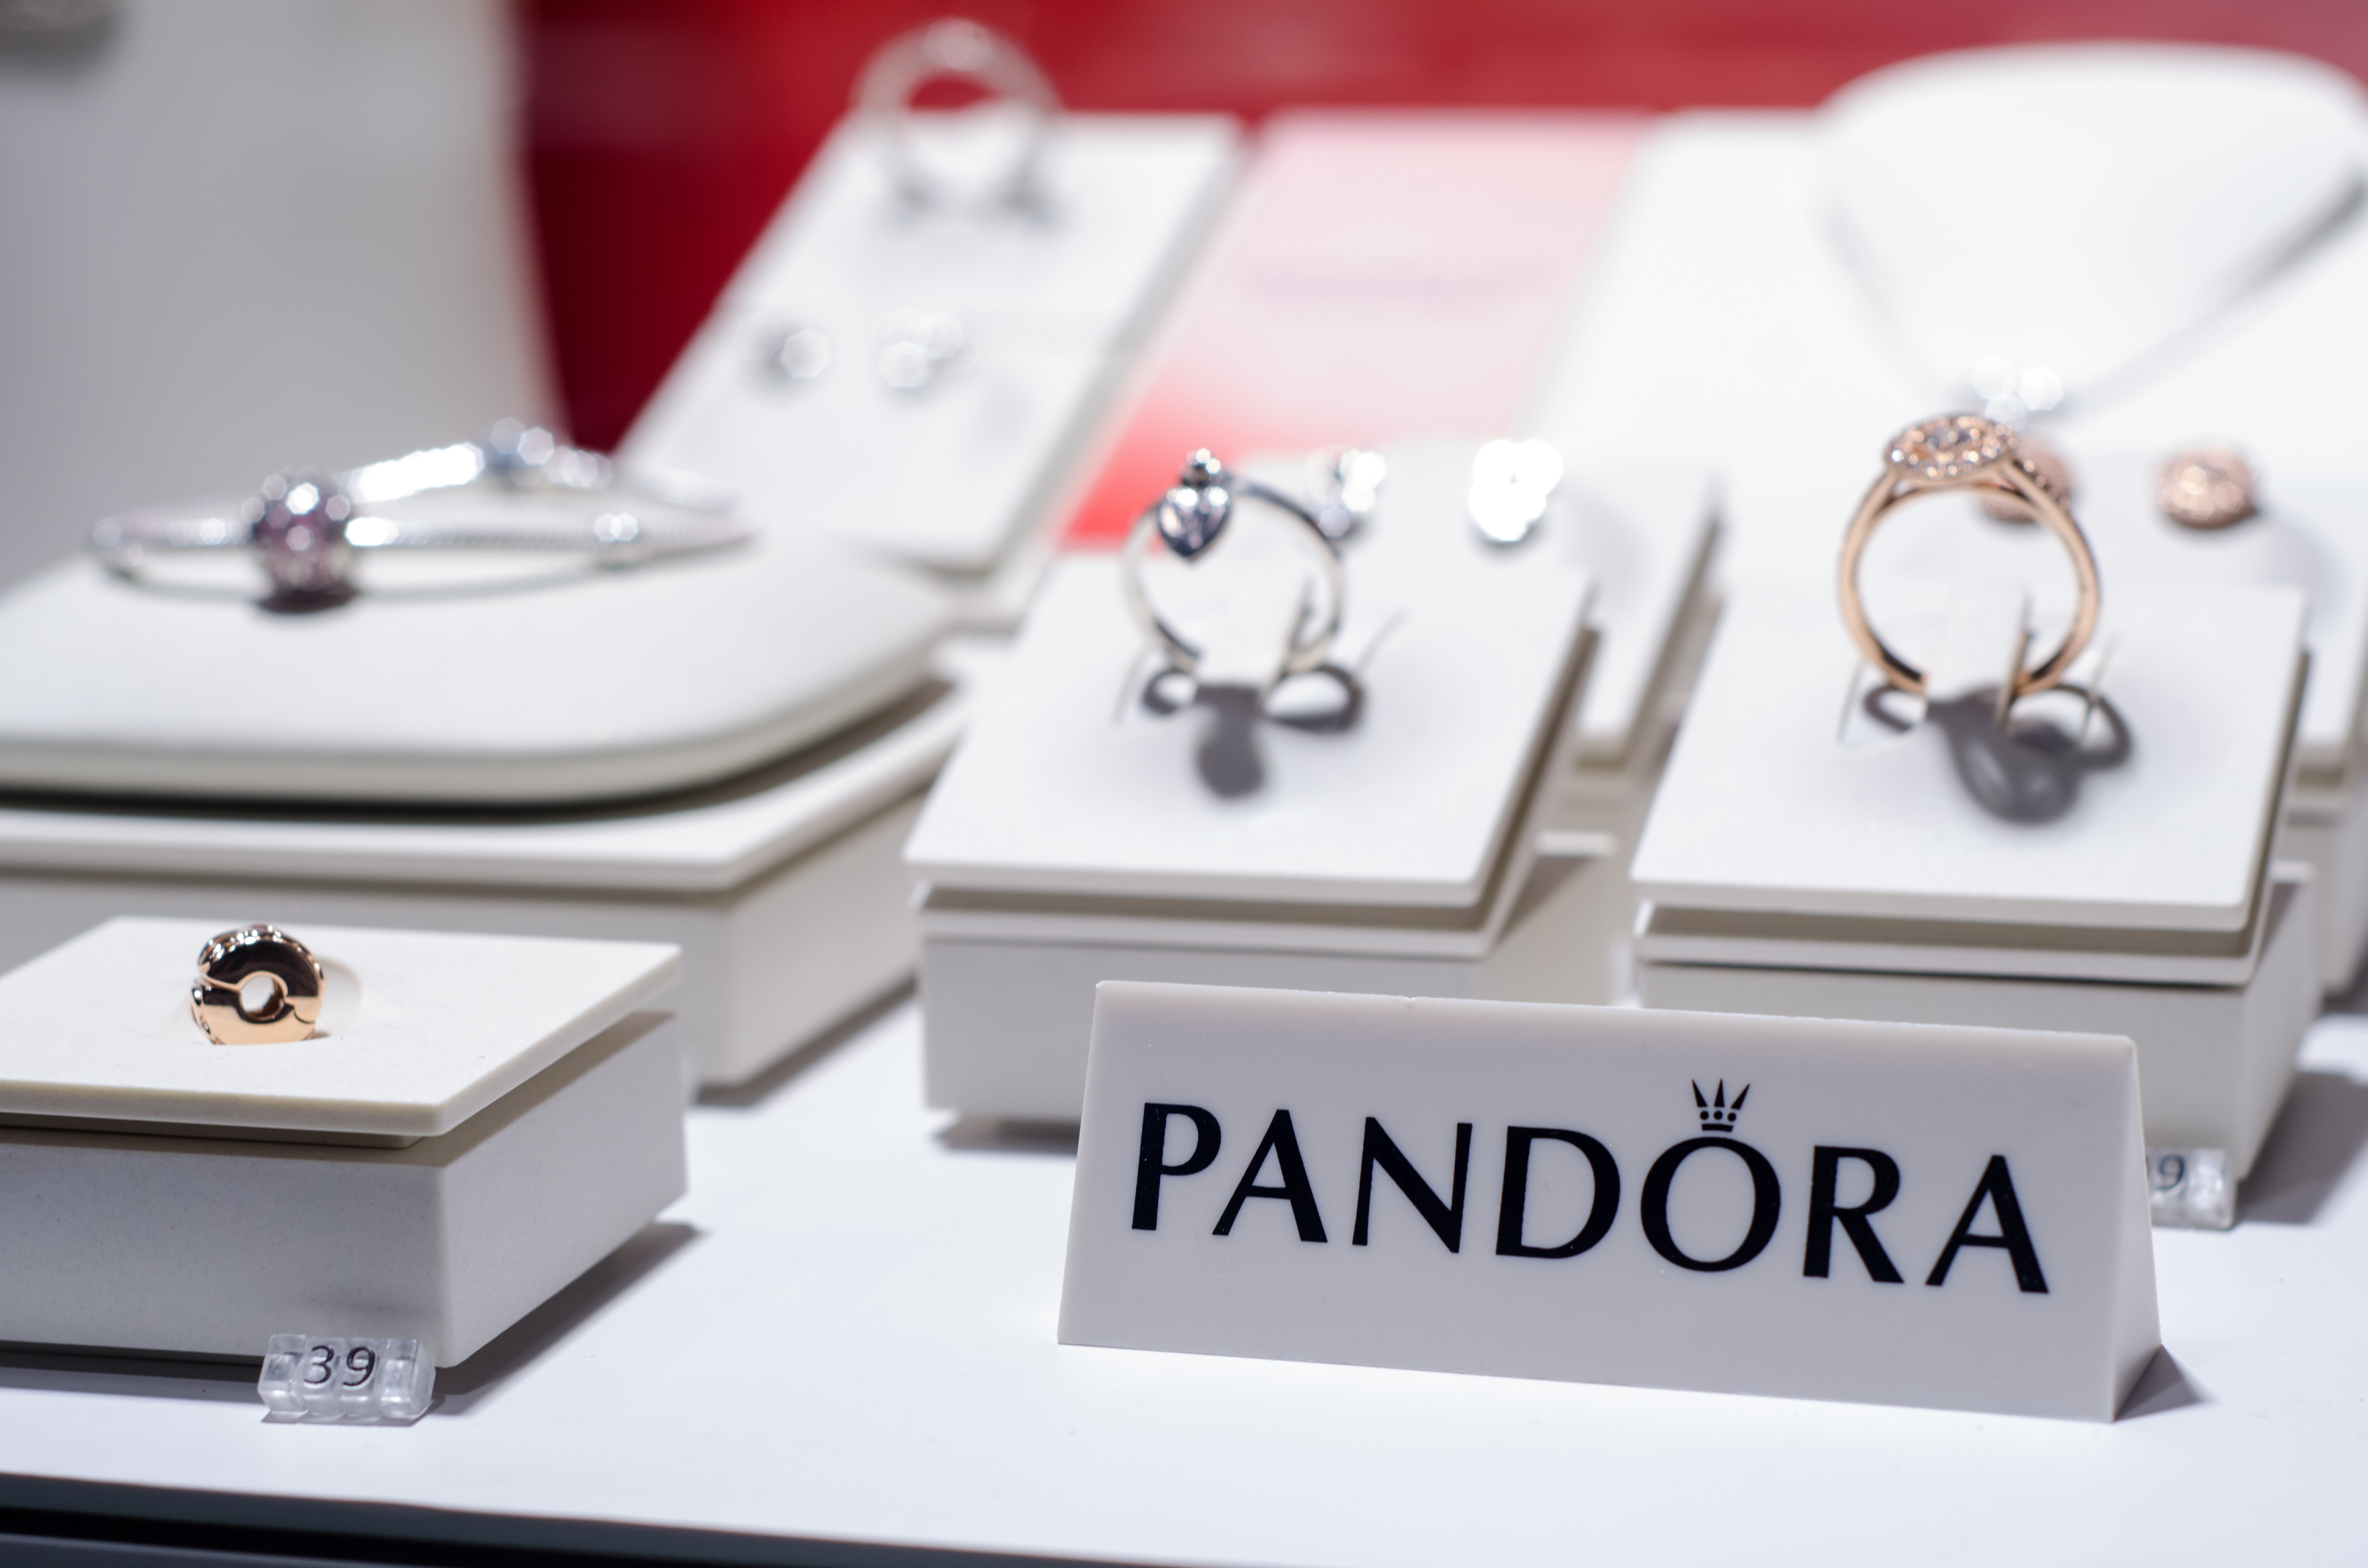 Settimo Piano and Pandora unite to share unique jewellery experiences.